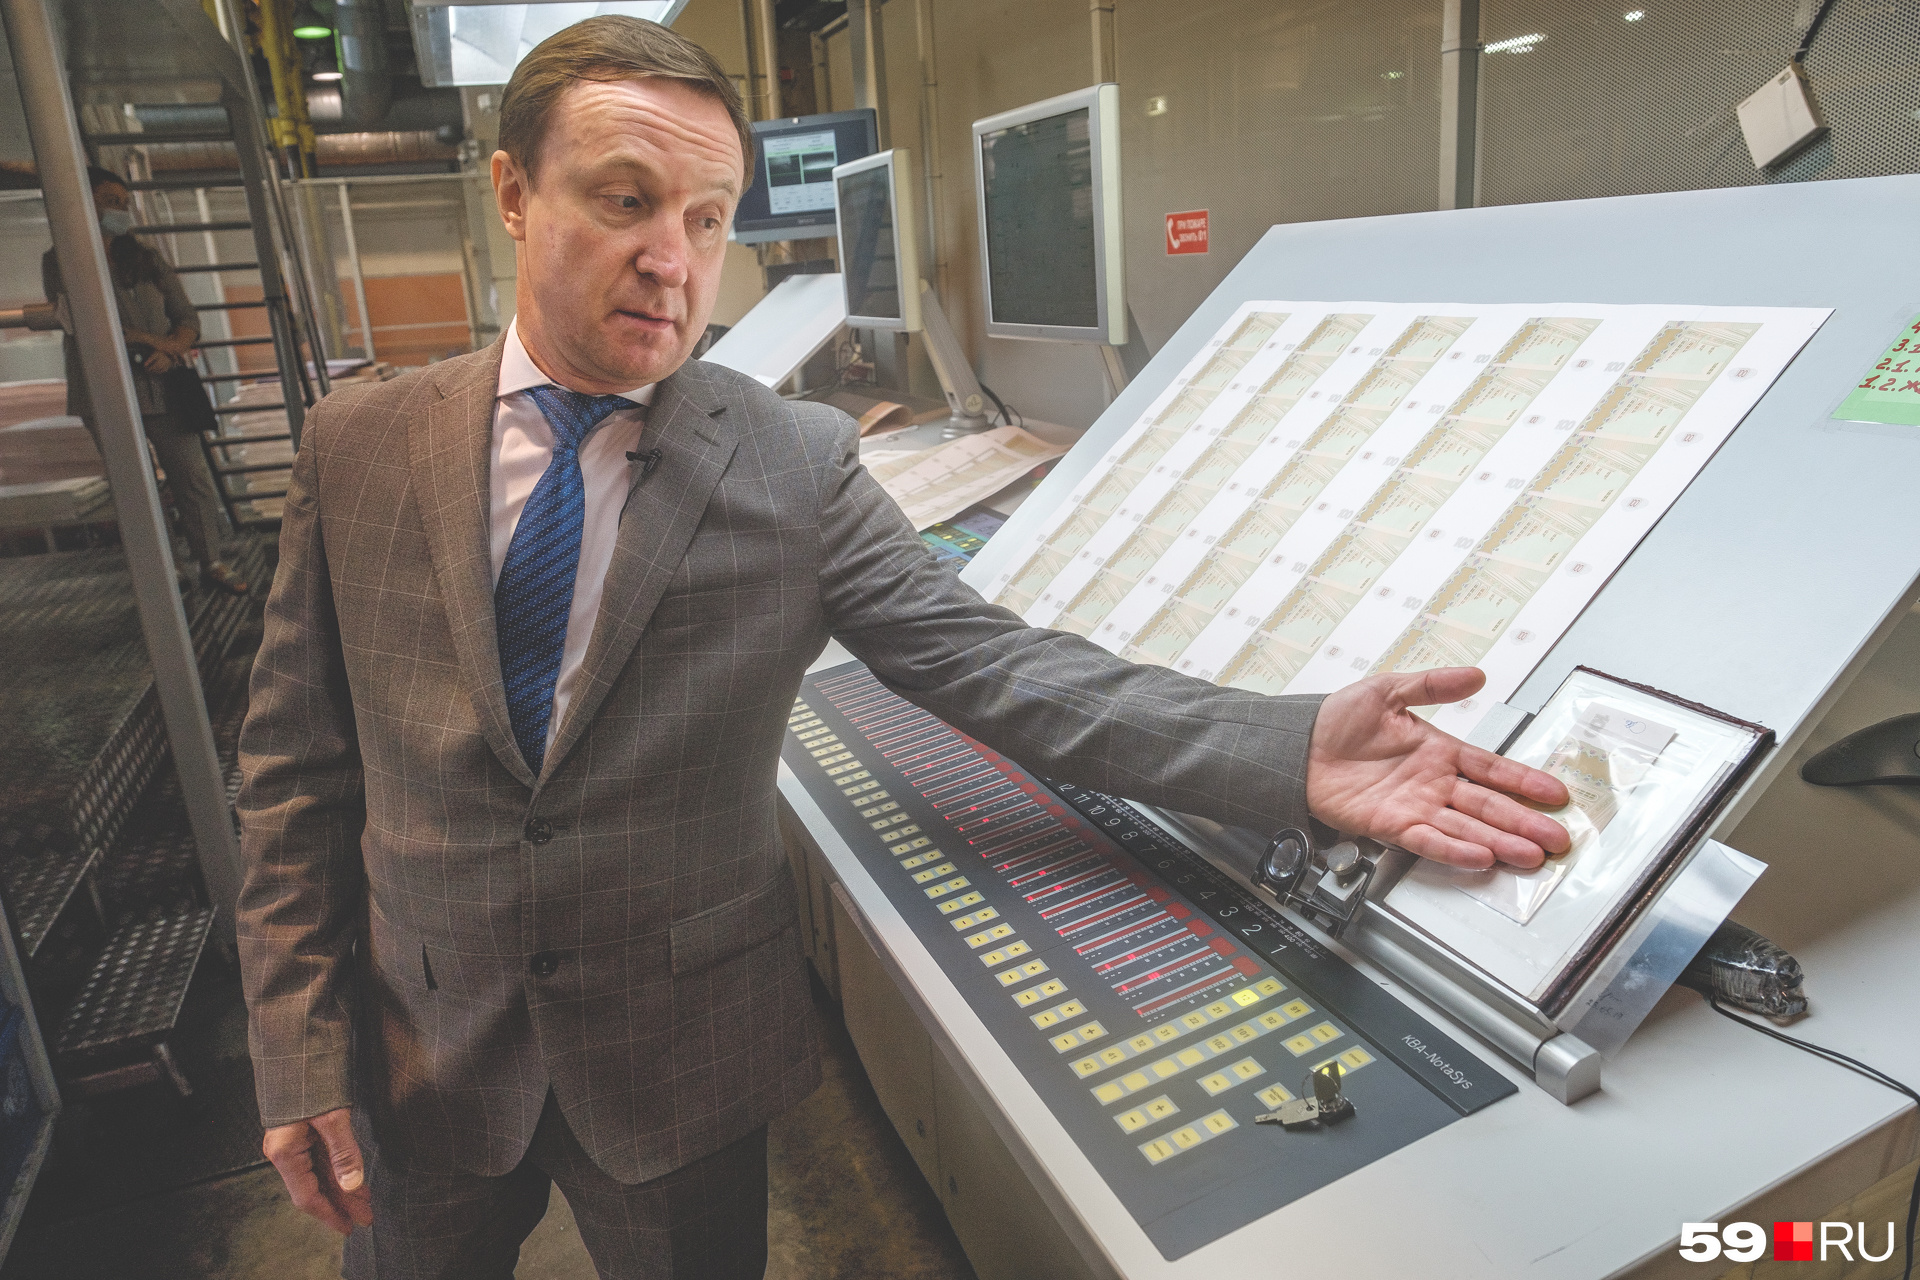 Директор фабрики Виктор Осетров показывает на образец, с которым сверяют изображение на отпечатанных листах